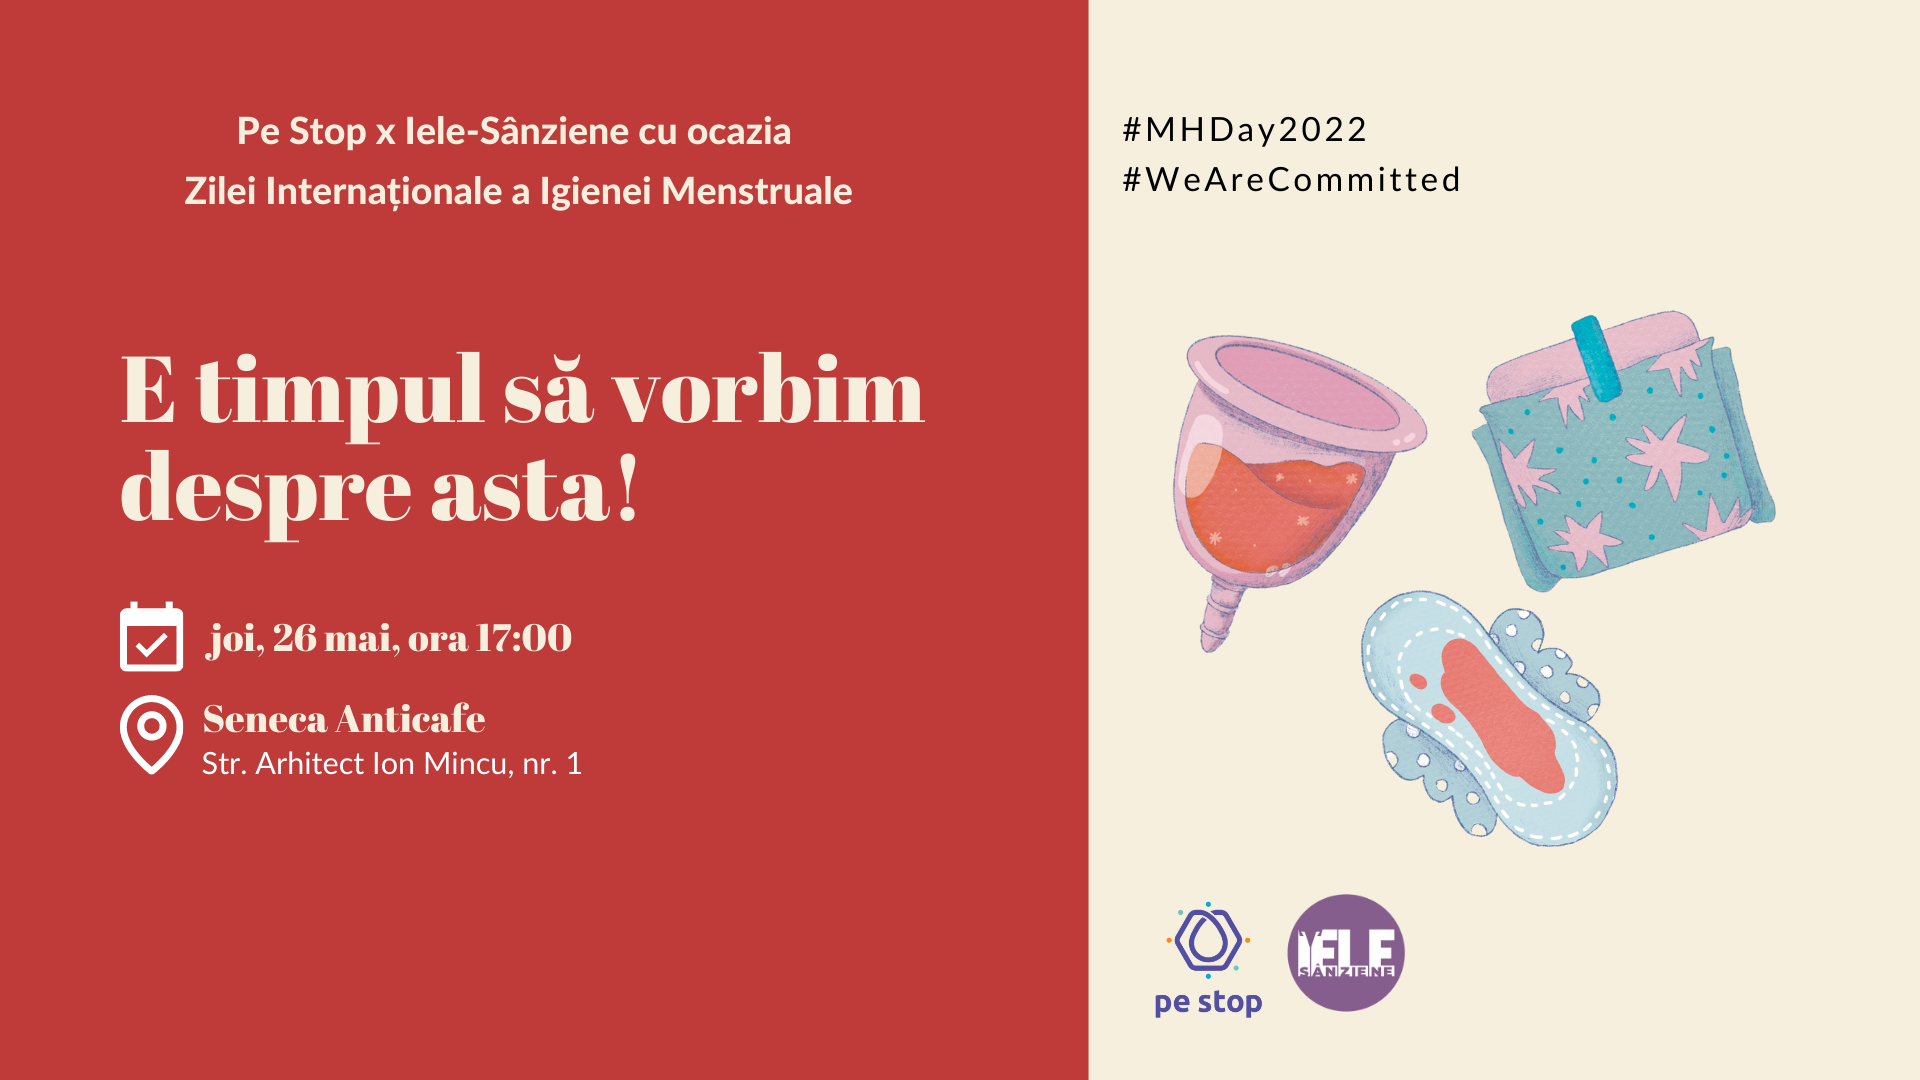 E timpul să vorbim despre asta - Pe Stop și Iele-Sânziene organizează un eveniment cu ocazia Zilei Internaționale a Igienei Menstruale